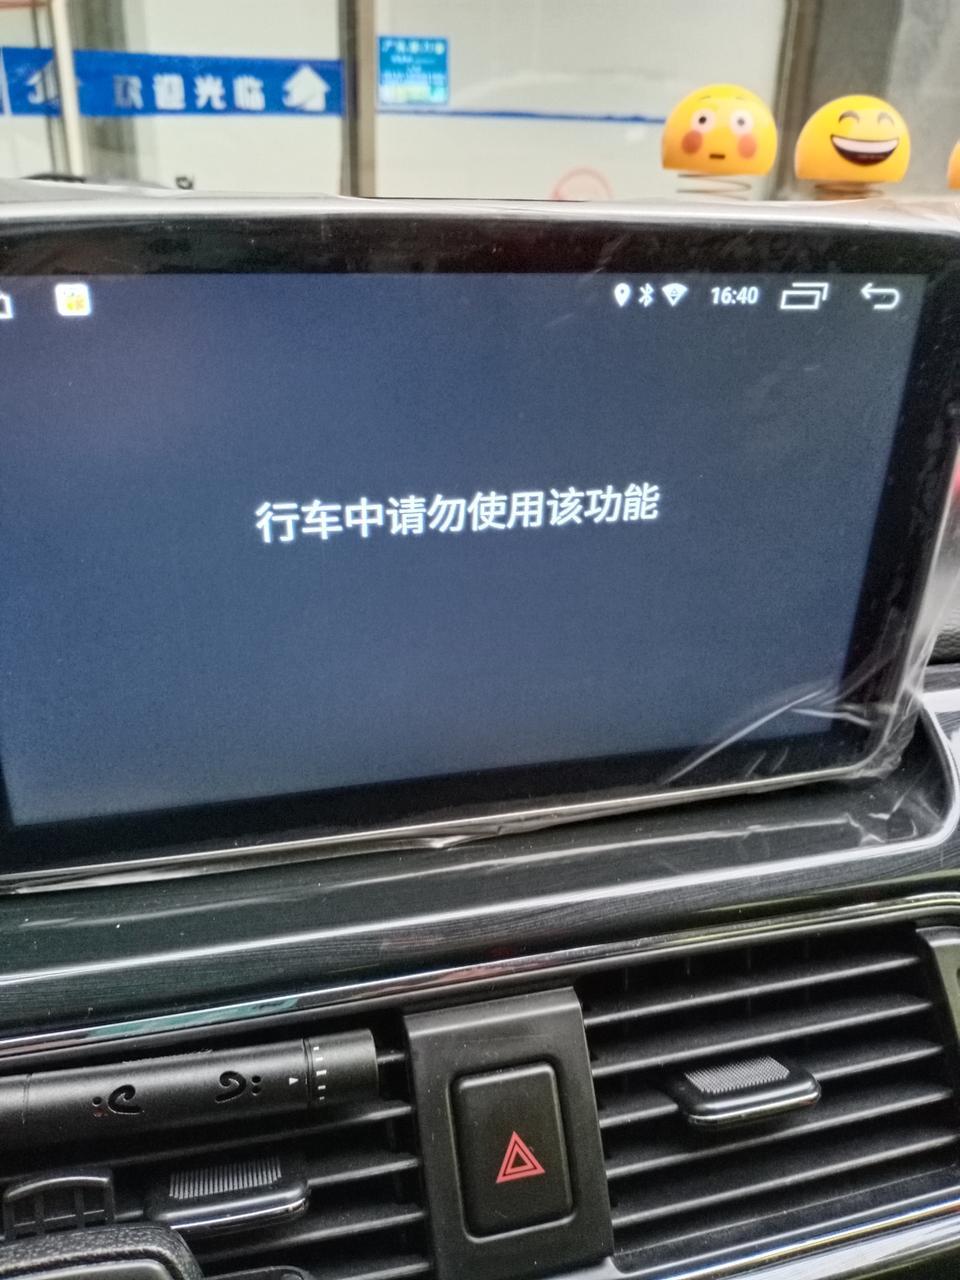 北汽昌河m60无论行车中还是停车都无法打开视屏  浏览器  酷狗等应用  求解答